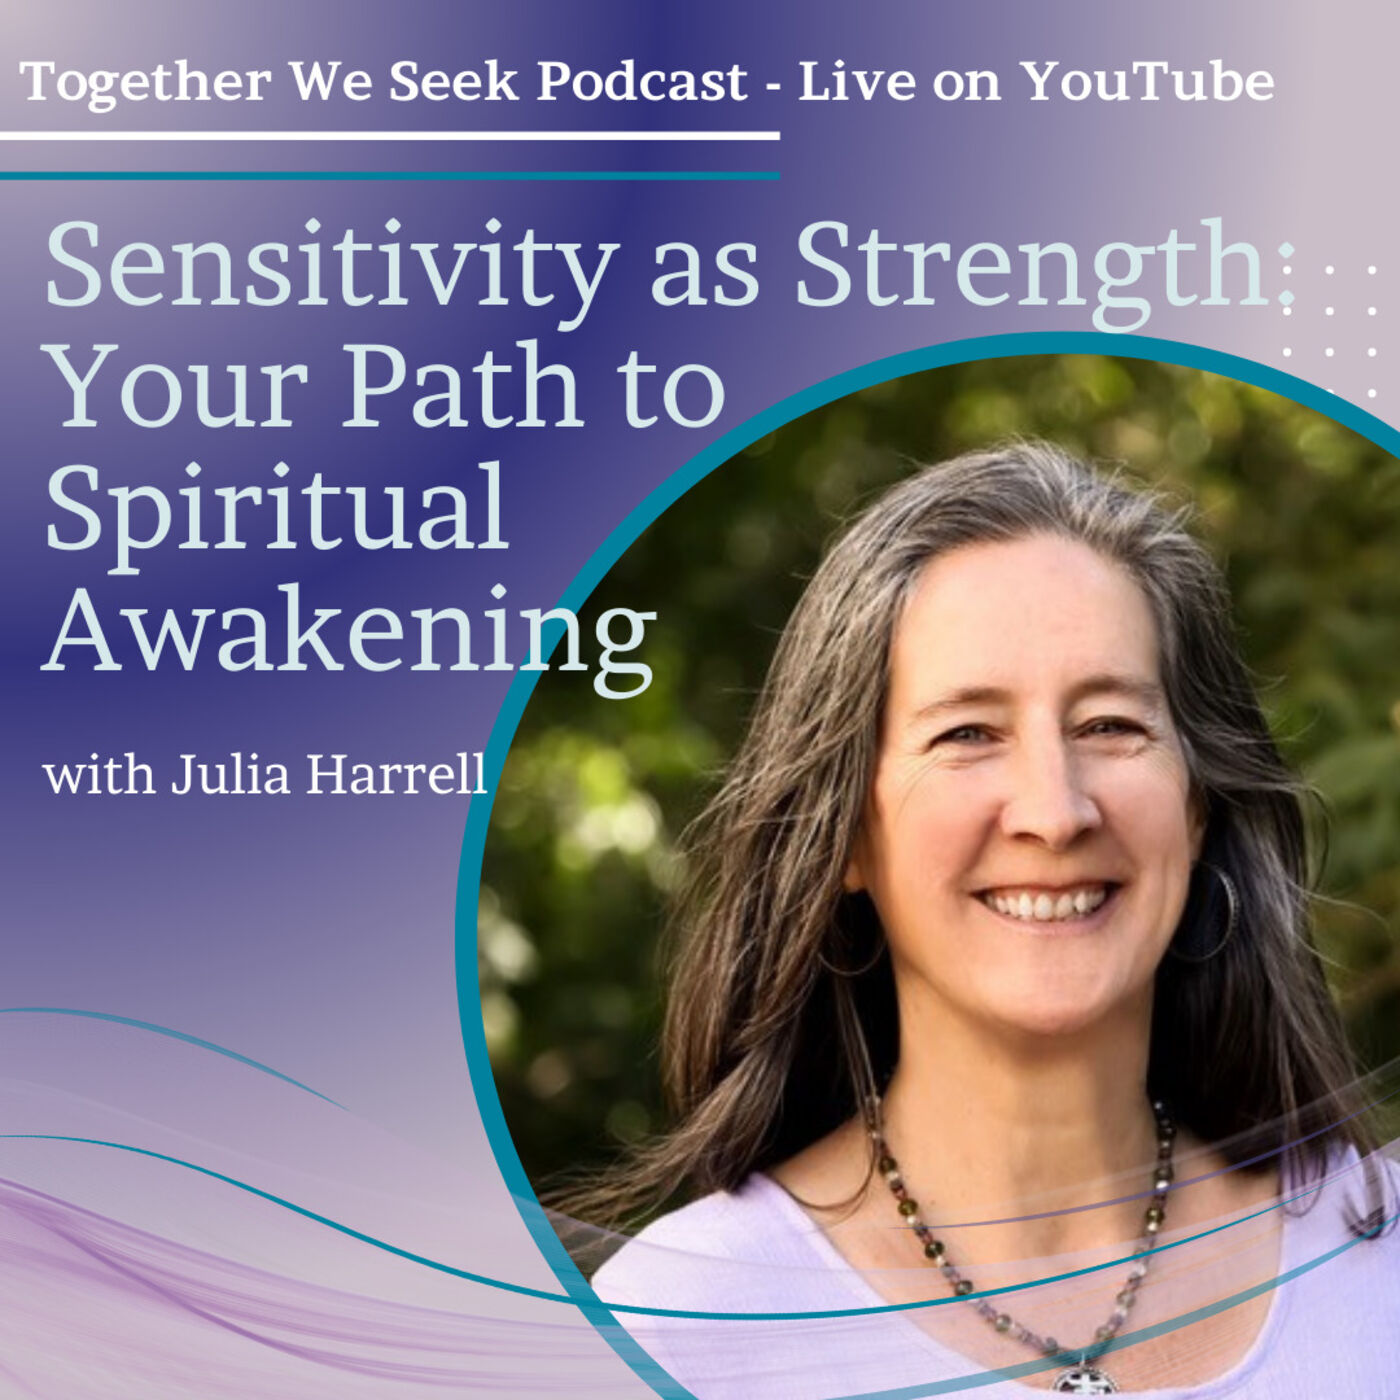 Sensitivity as Strength: Your Path to Spiritual Awakening with Julia Harrell